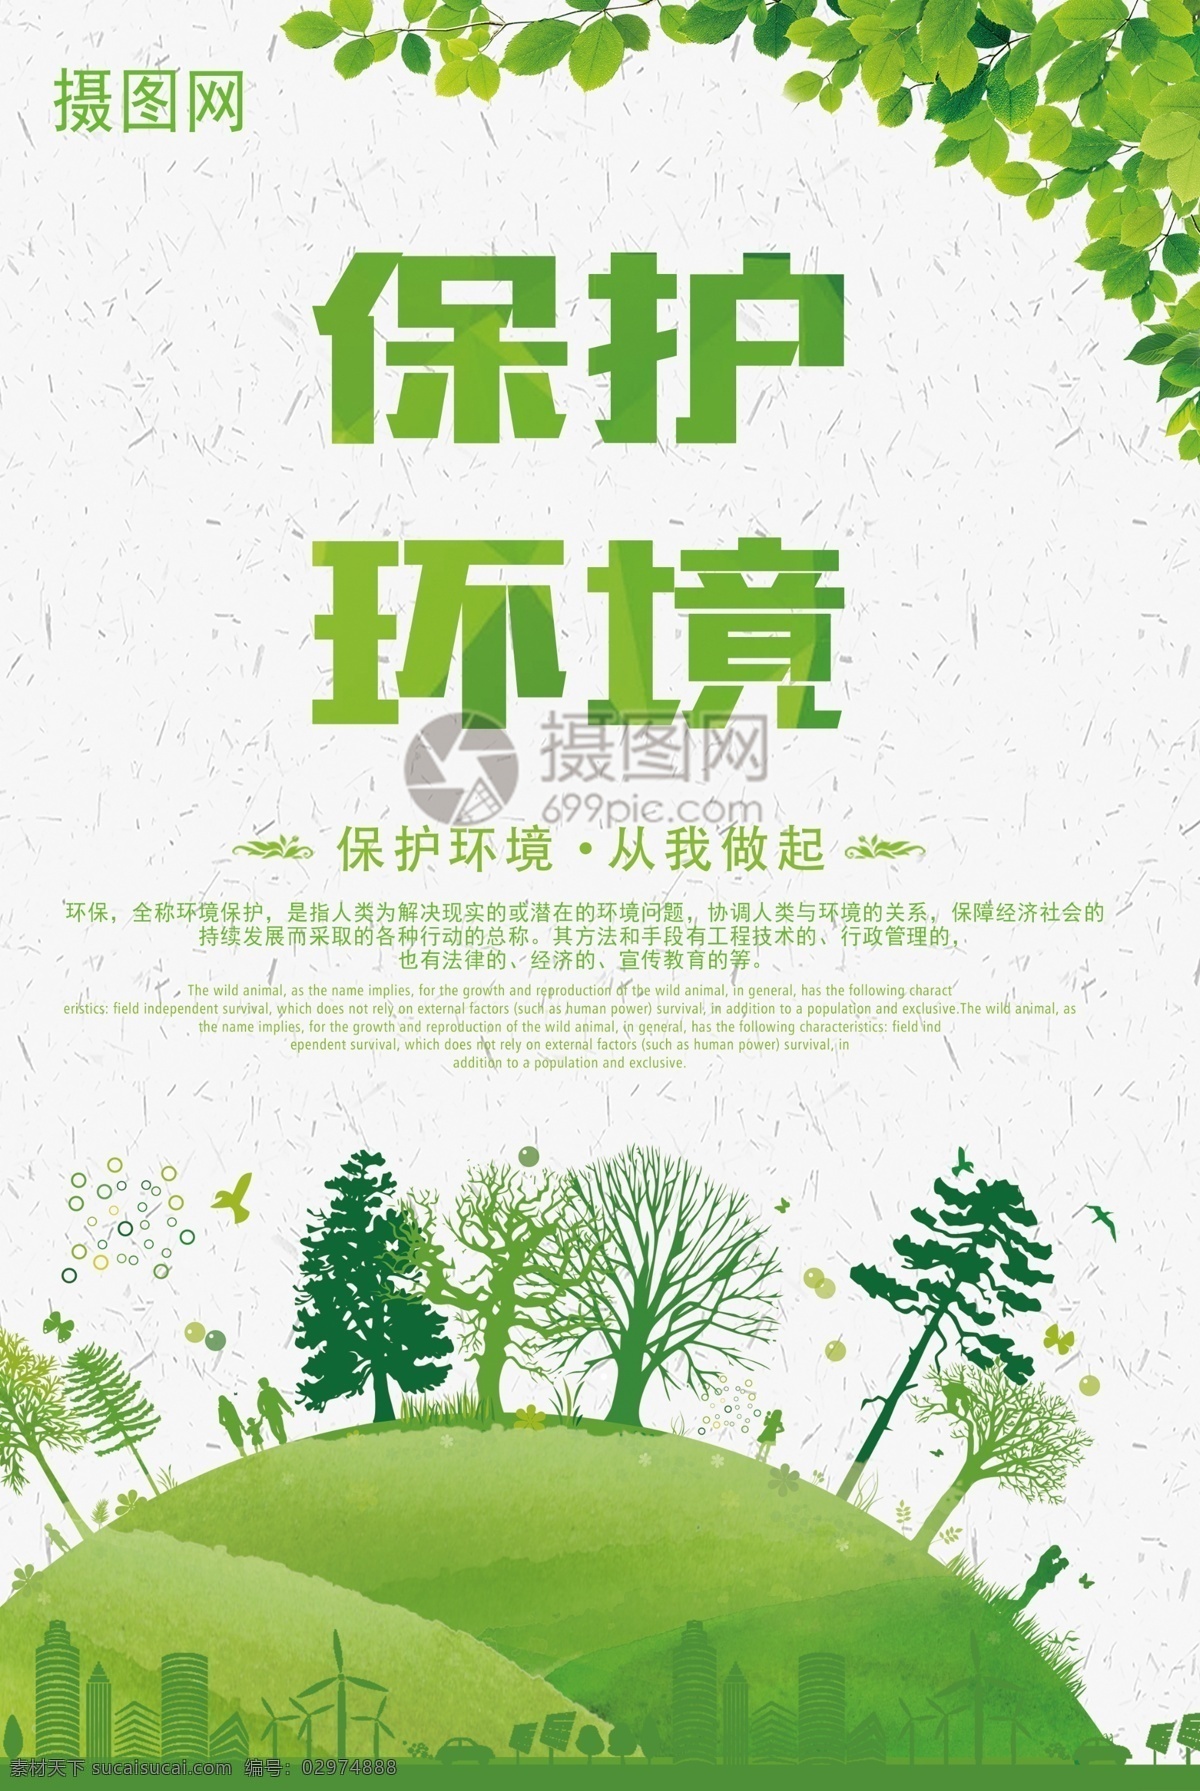 保护环境海报 保护环境 共享绿色 绿色文明 节能低碳生活 绿色低碳 生态文明 地球日 创意 公益 海报 文明 环保 保护 环境 绿色